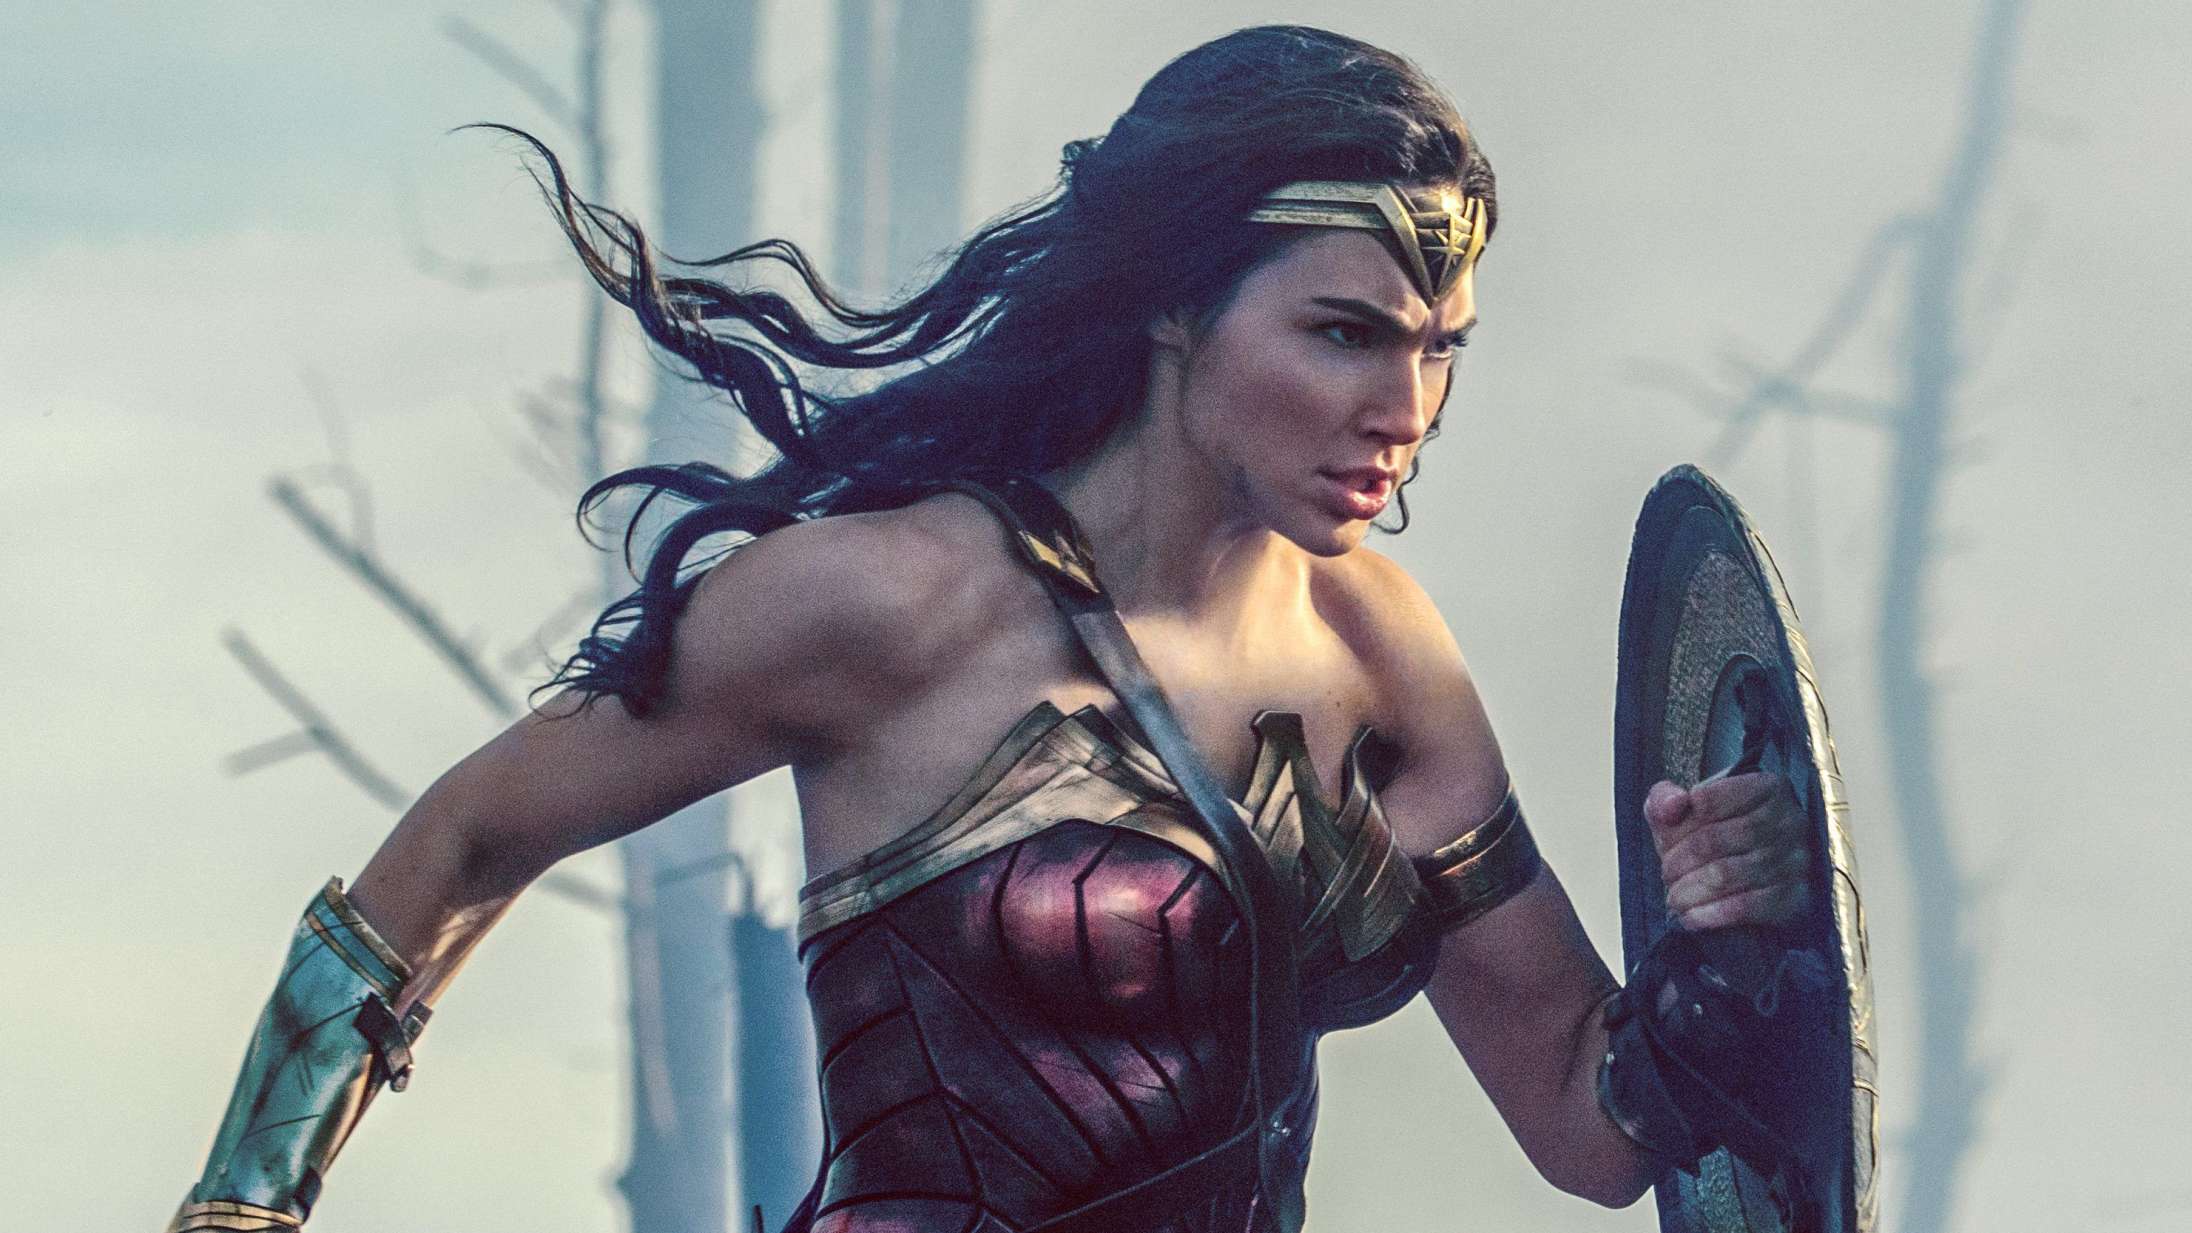 Hvorfor har Wonder Woman hotpants på i krig?